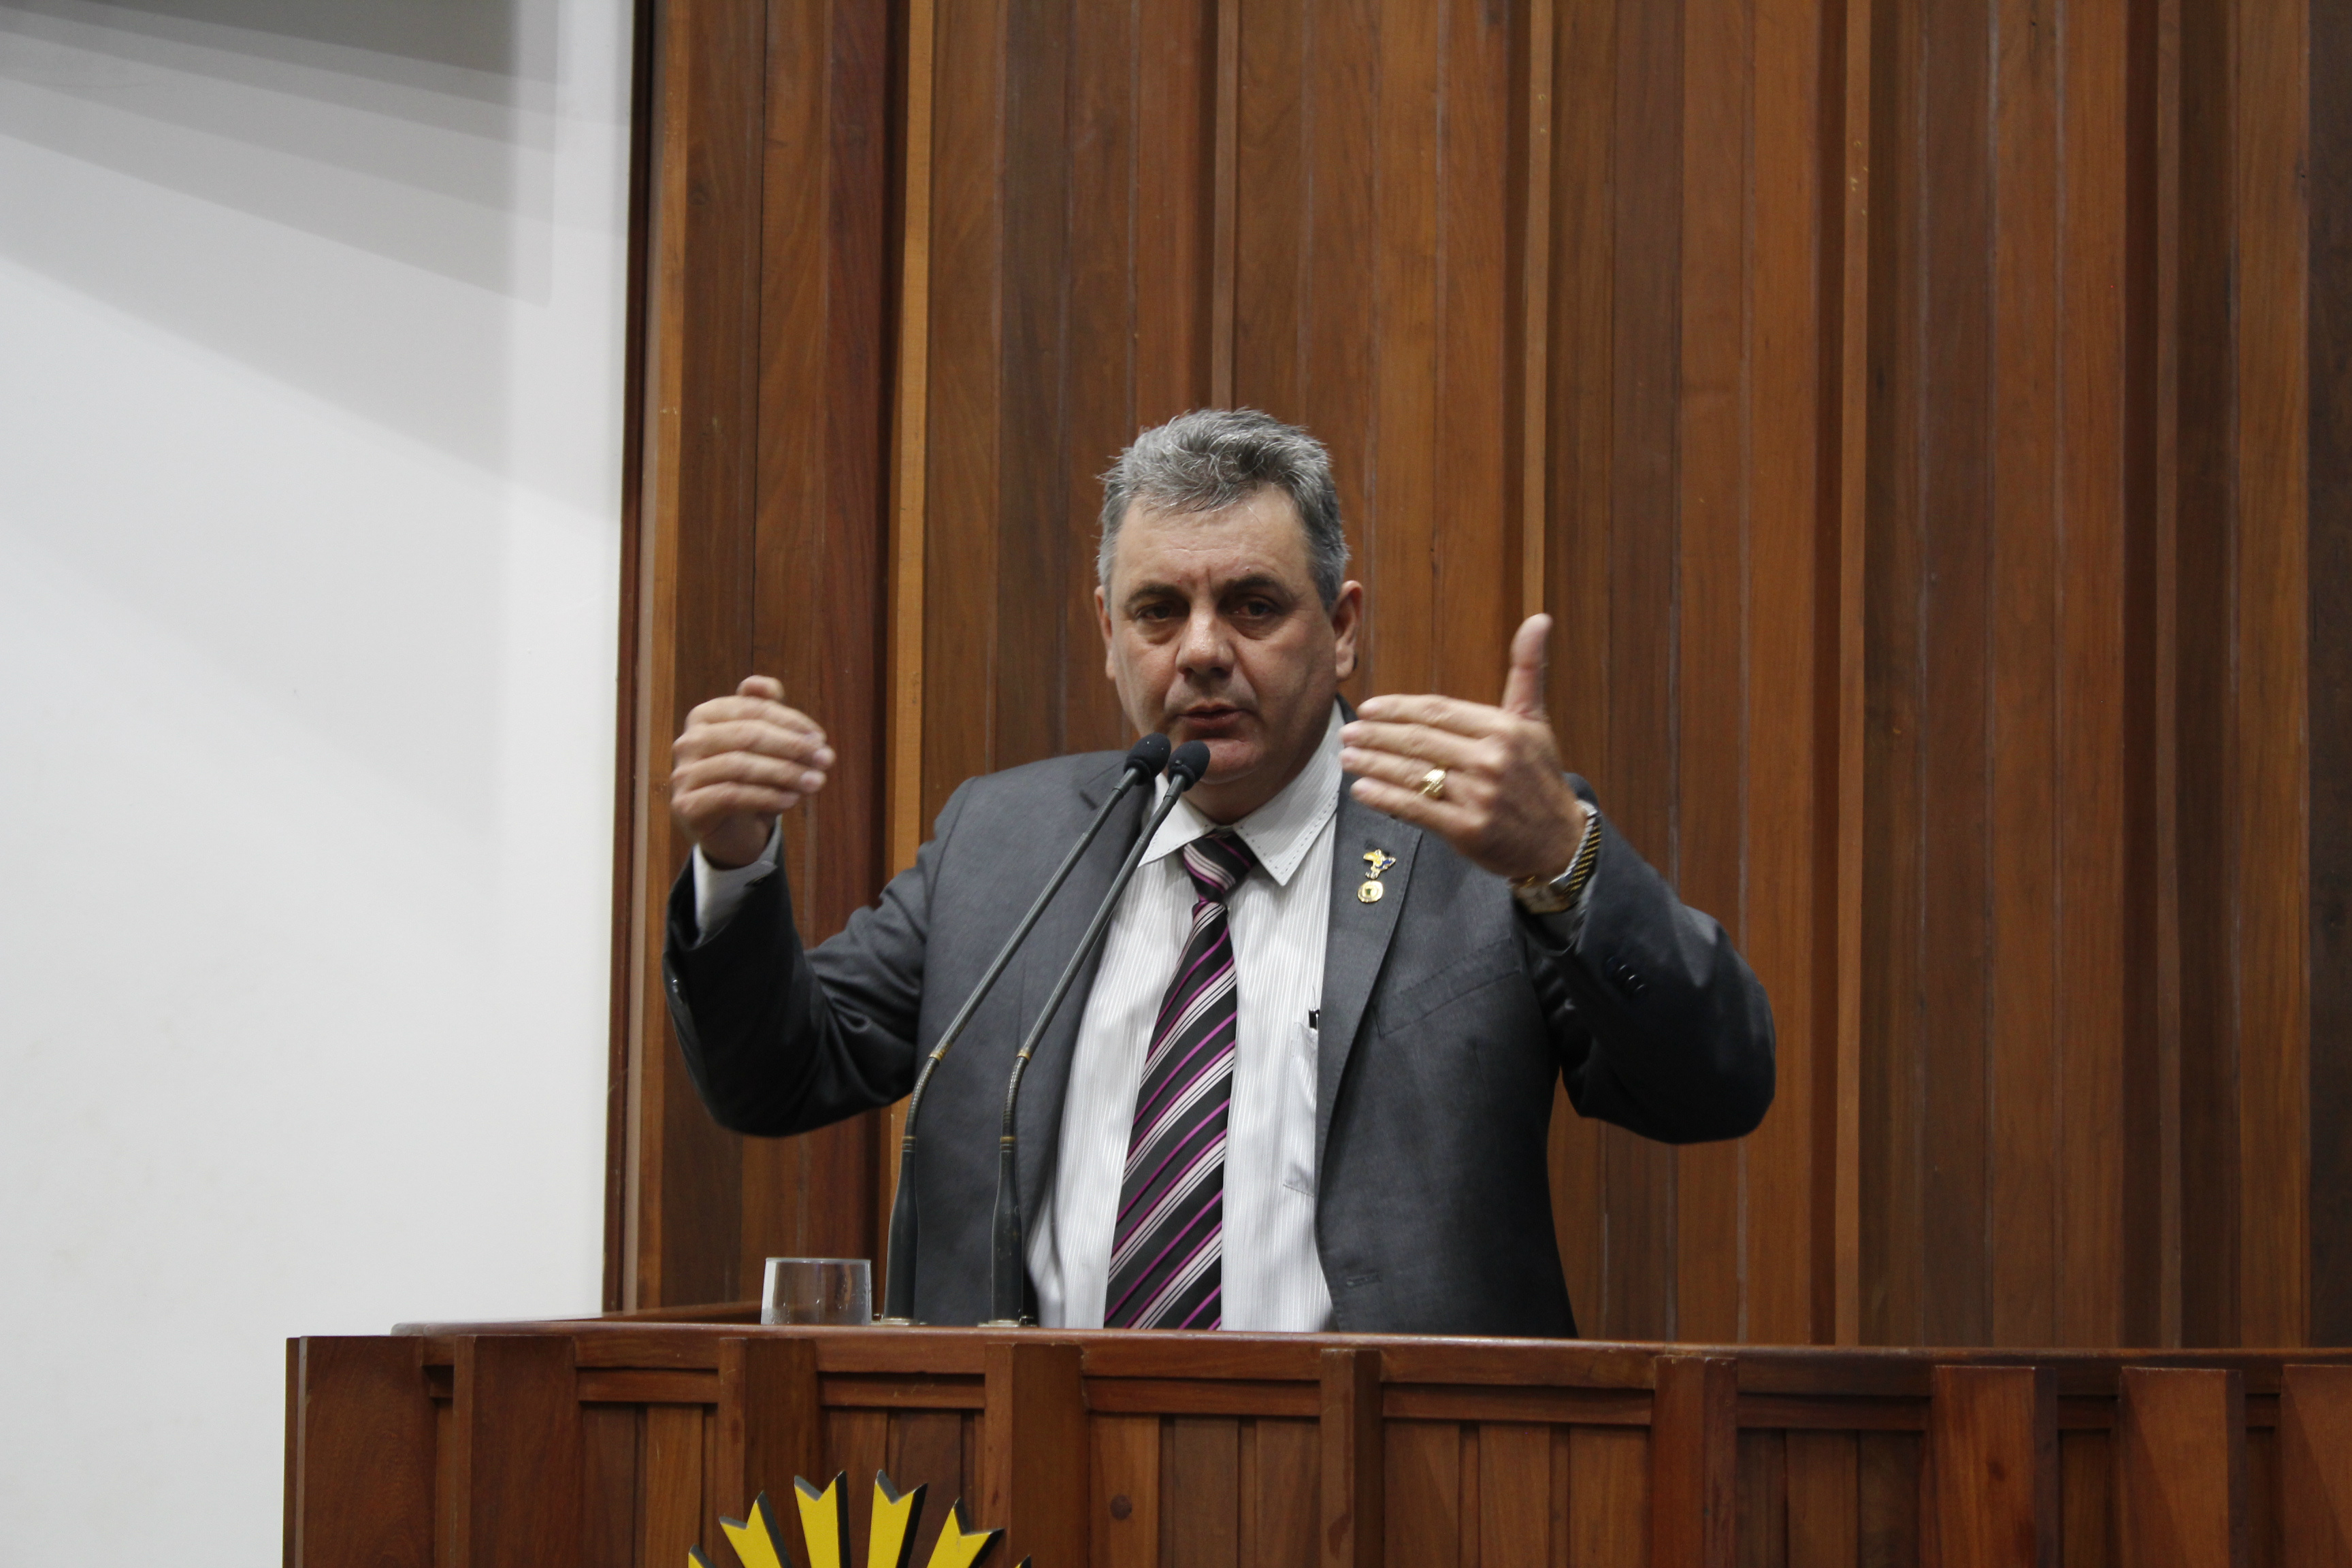 Angelo Guerreiro durante a sessão plenária nesta quinta-feira. (Foto: Assessoria)